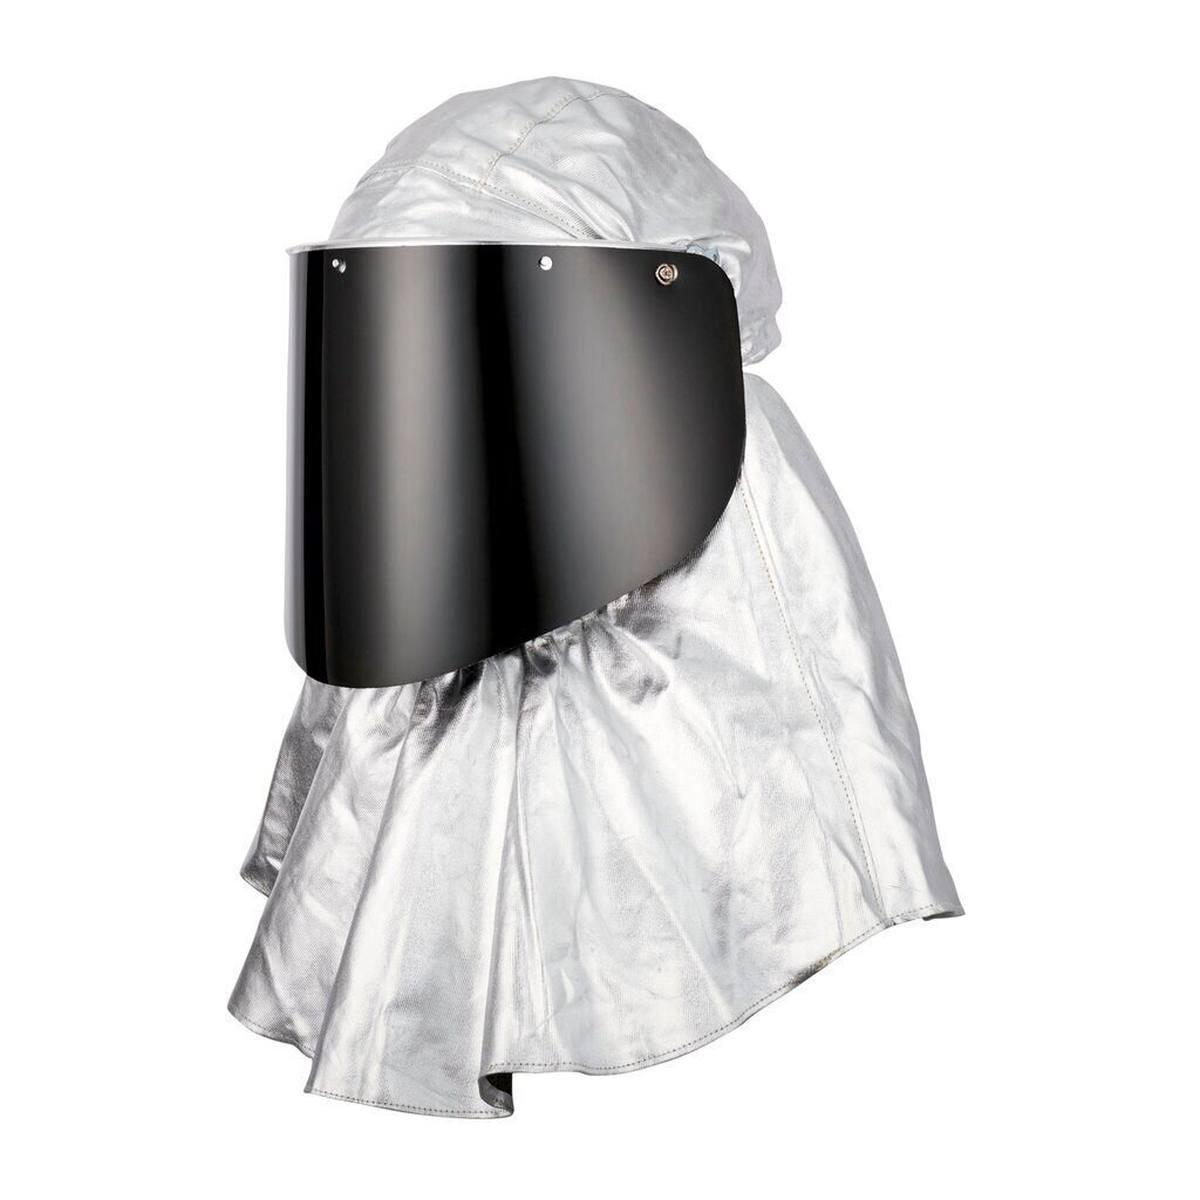 Casque de protection 3M Versaflo M407 avec couvre-cou et épaules difficilement inflammables et visière en polycarbonate, transparent